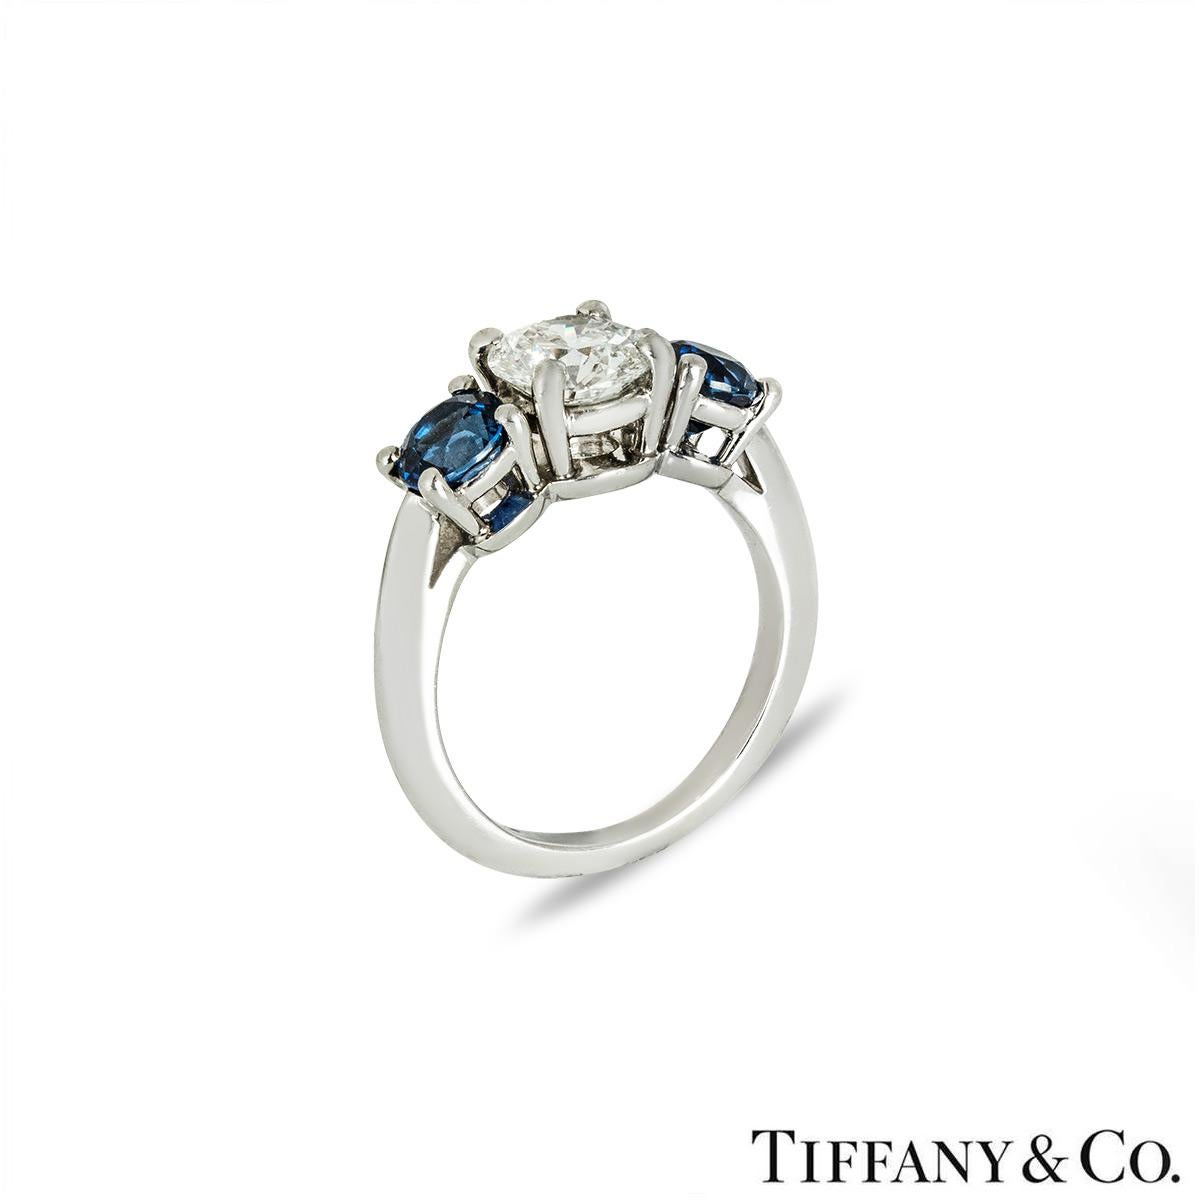 Ein atemberaubender Platinring mit Diamanten und Saphiren von Tiffany & Co. Der Ring besteht aus einem runden Diamanten mit Brillantschliff in der Mitte und einem Saphir auf jeder Seite in einer Fassung mit vier Krallen. Der runde Diamant im